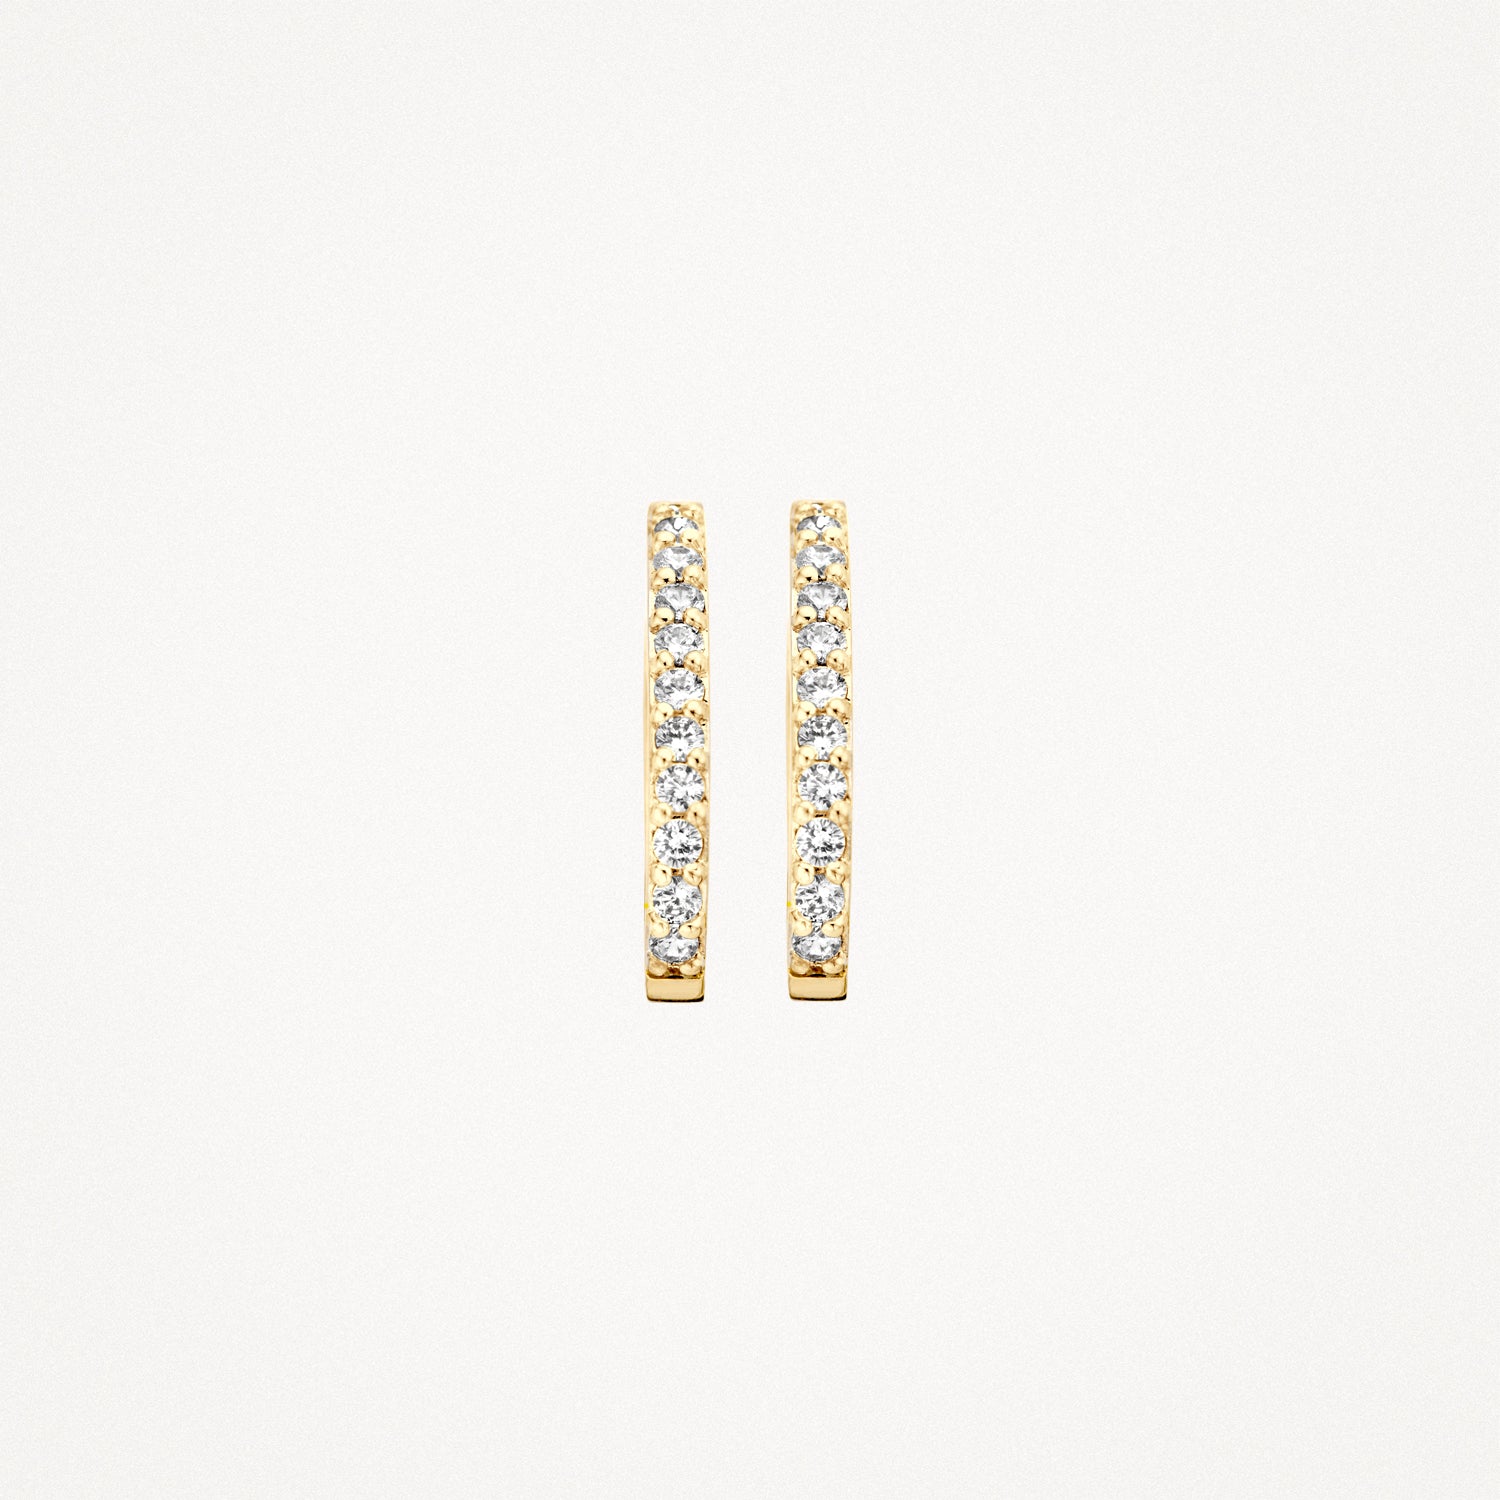 Earrings 7236YZI - 14k Yellow Gold with Zirconia